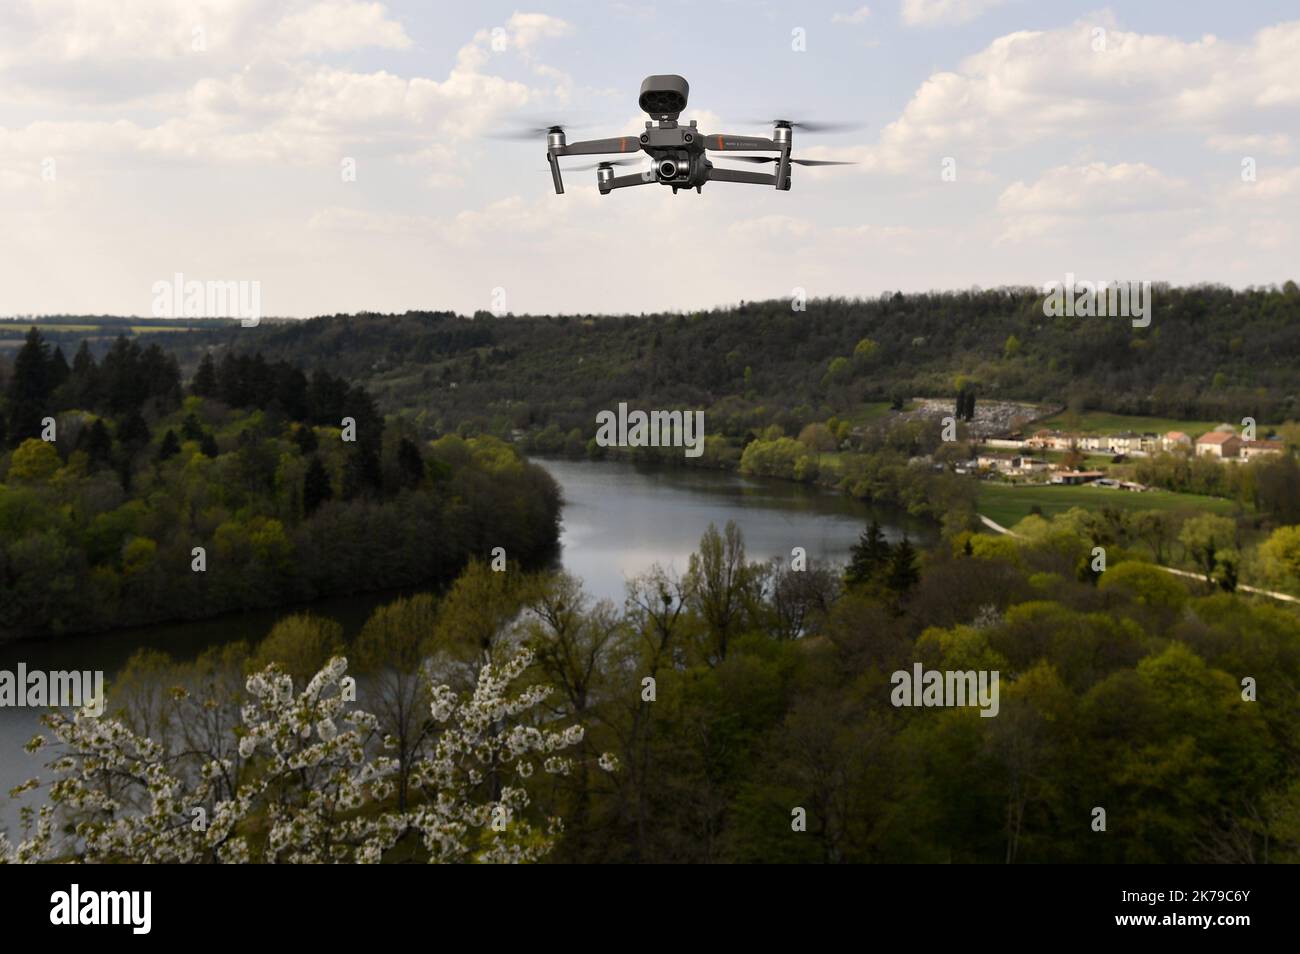 Drone d'urgence Banque de photographies et d'images à haute résolution -  Page 2 - Alamy